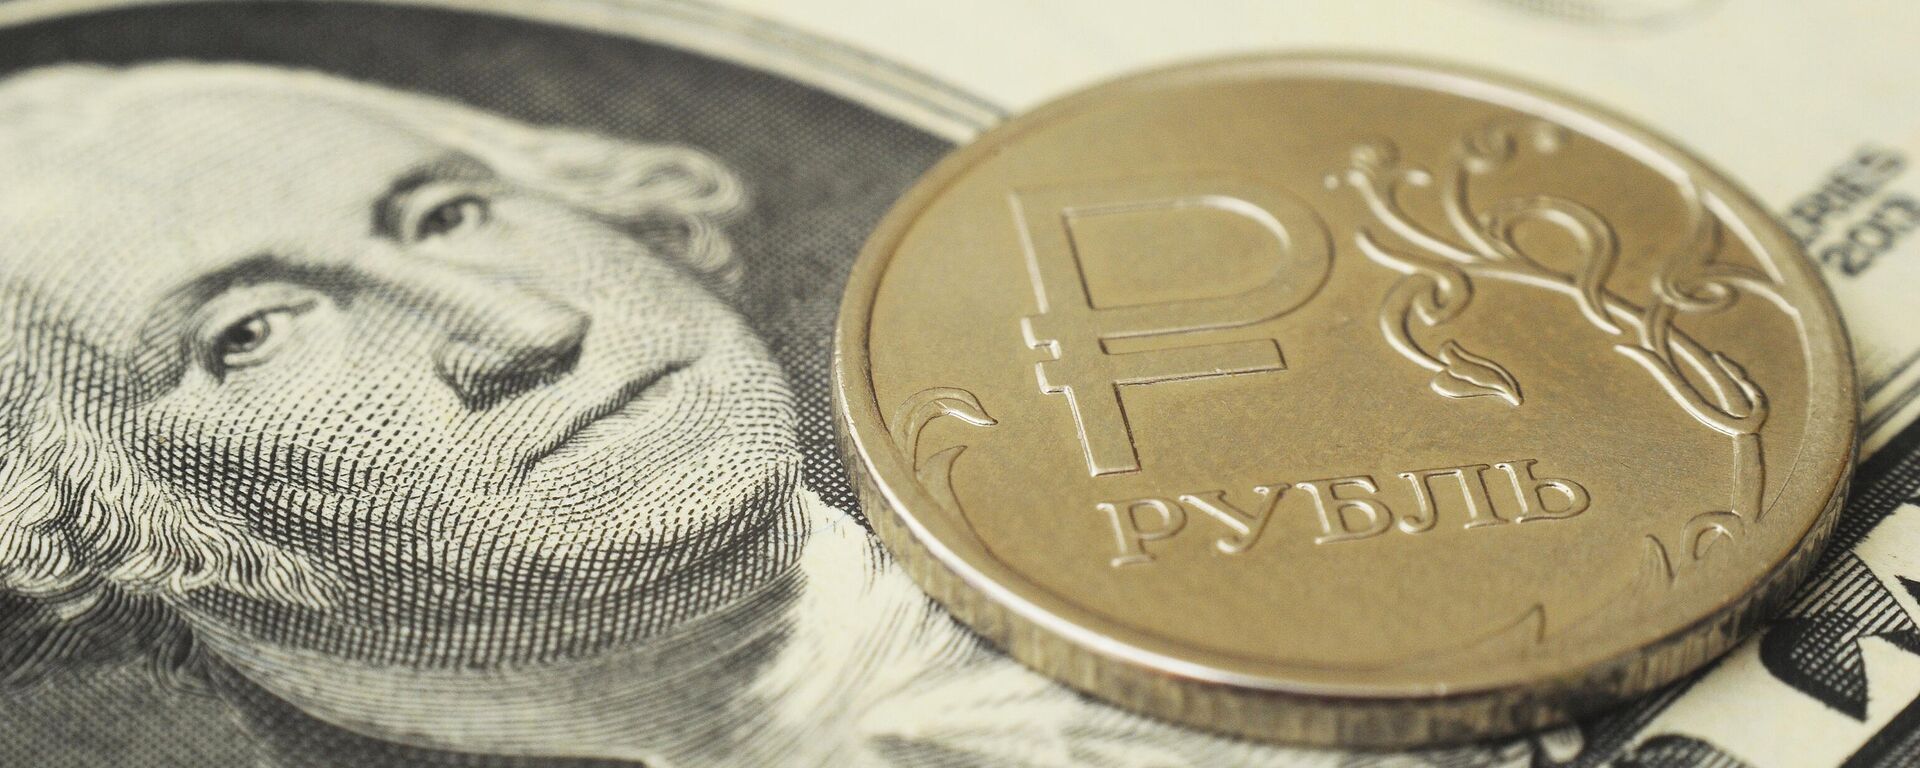 Монета номиналом один рубль на банкноте один доллар США. - Sputnik Абхазия, 1920, 06.06.2022